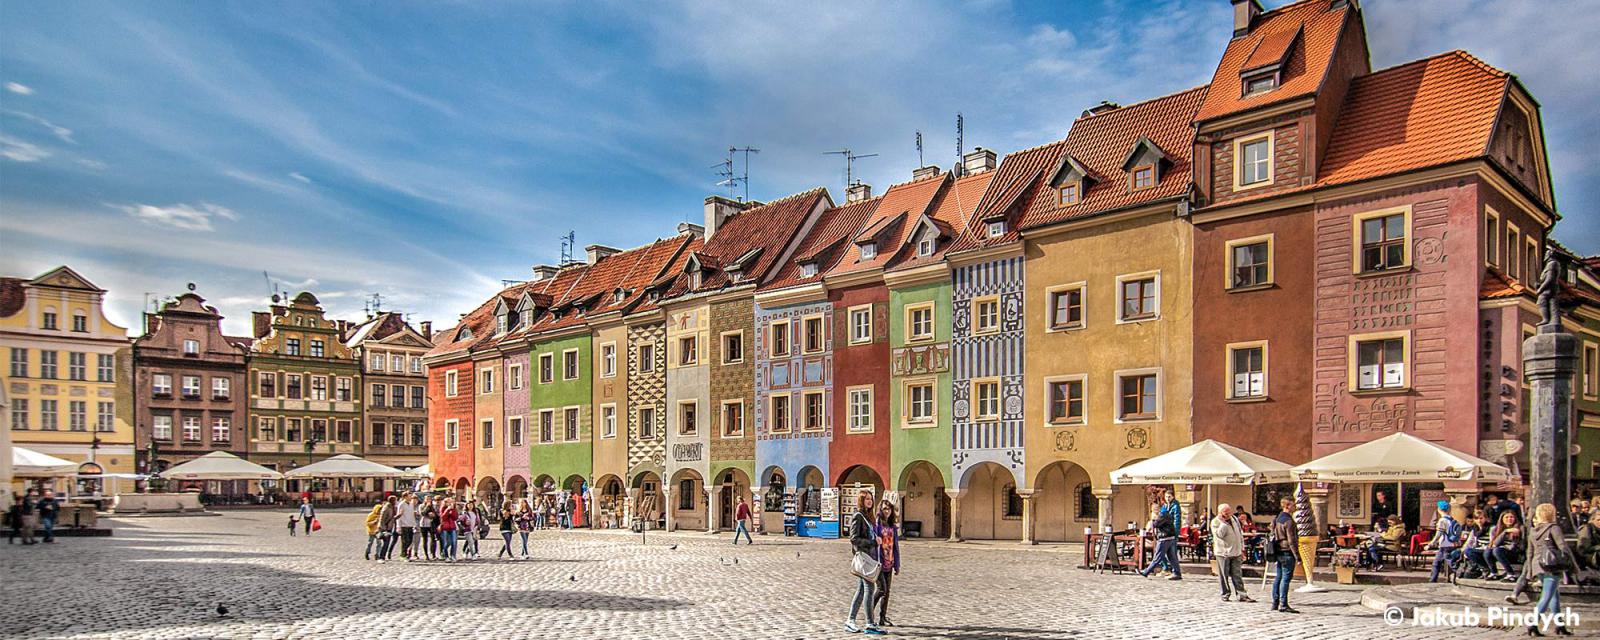 Tips voor je stedentrip naar het kleurrijke Poznań 